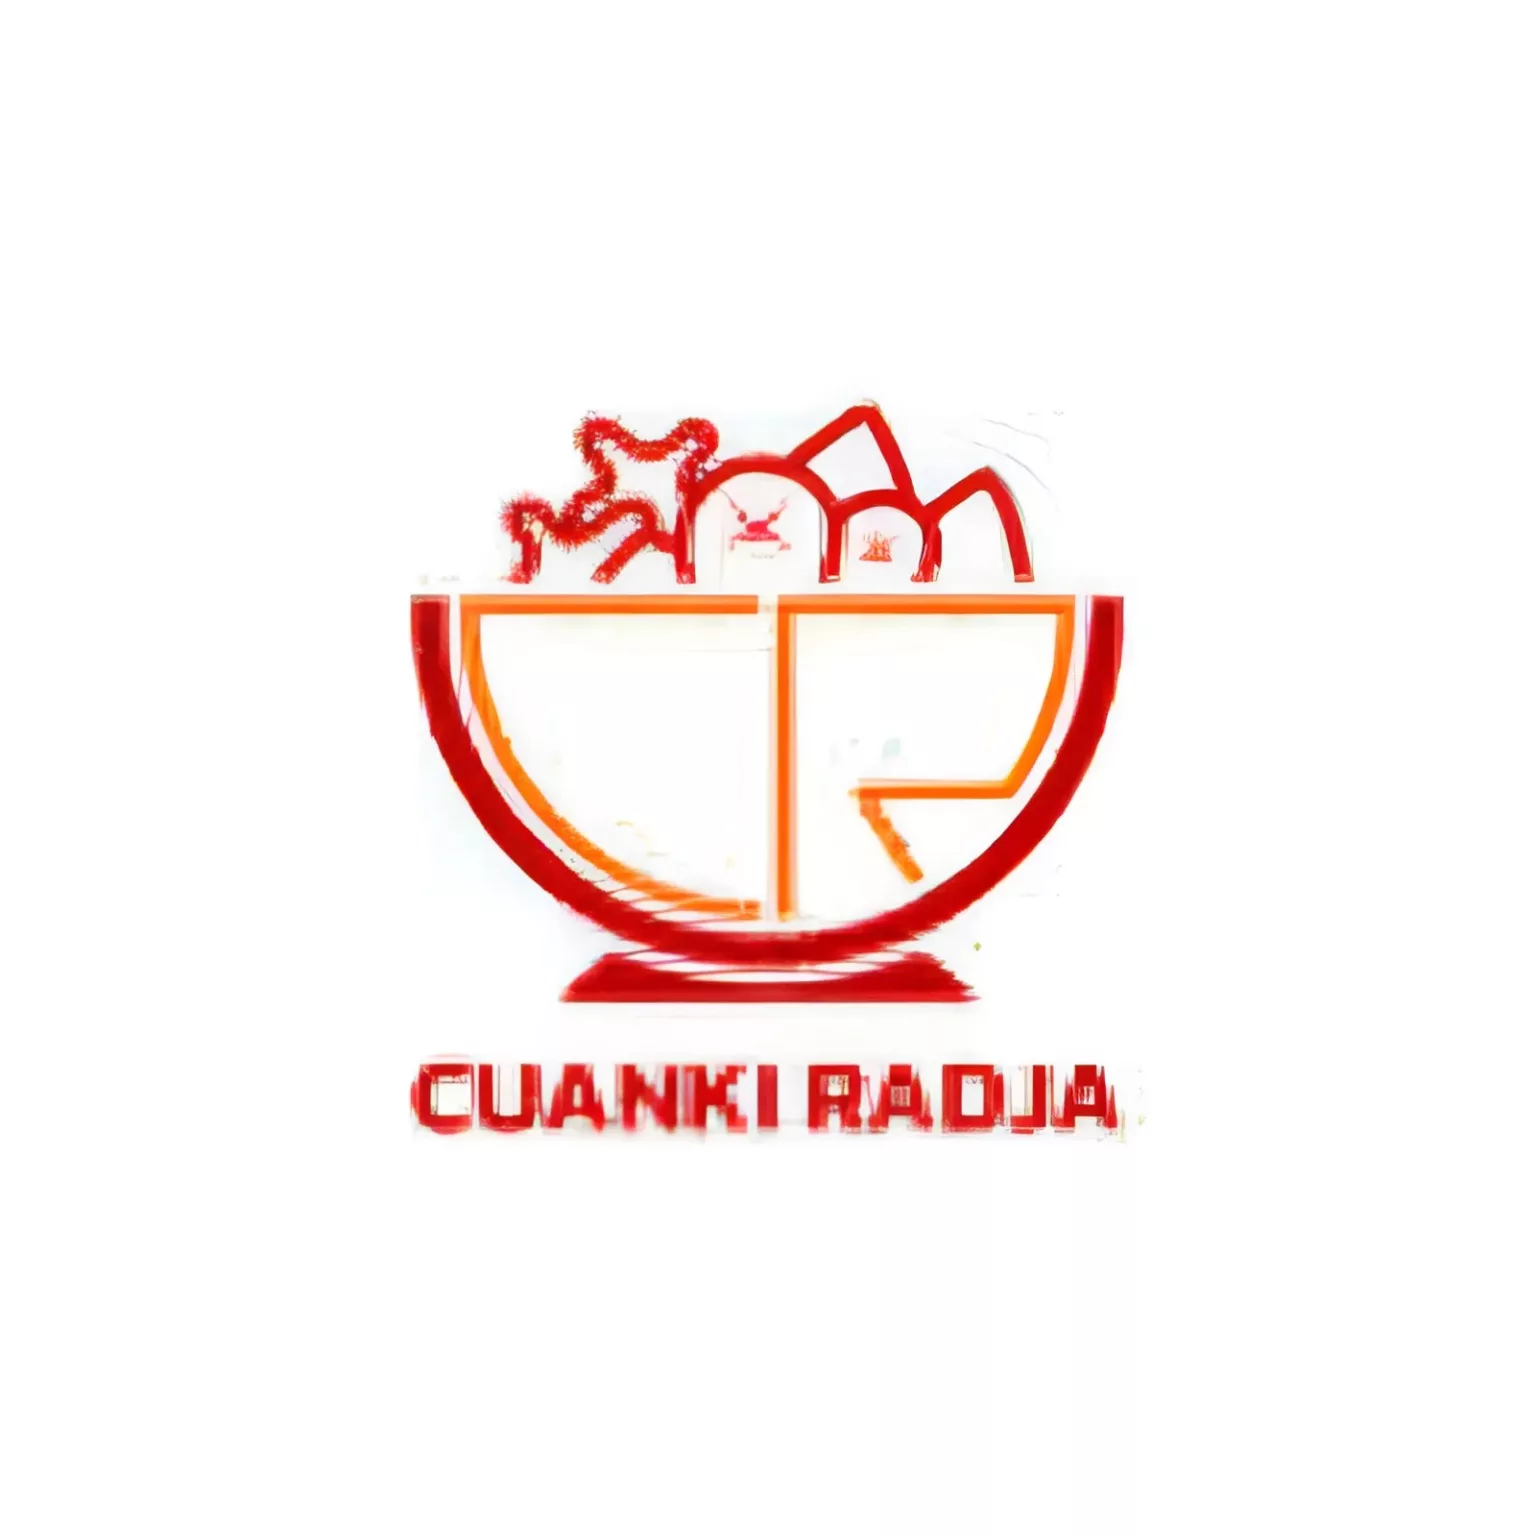 Berikut informasi mengenai loker yang diadakan Cuanki Radja.